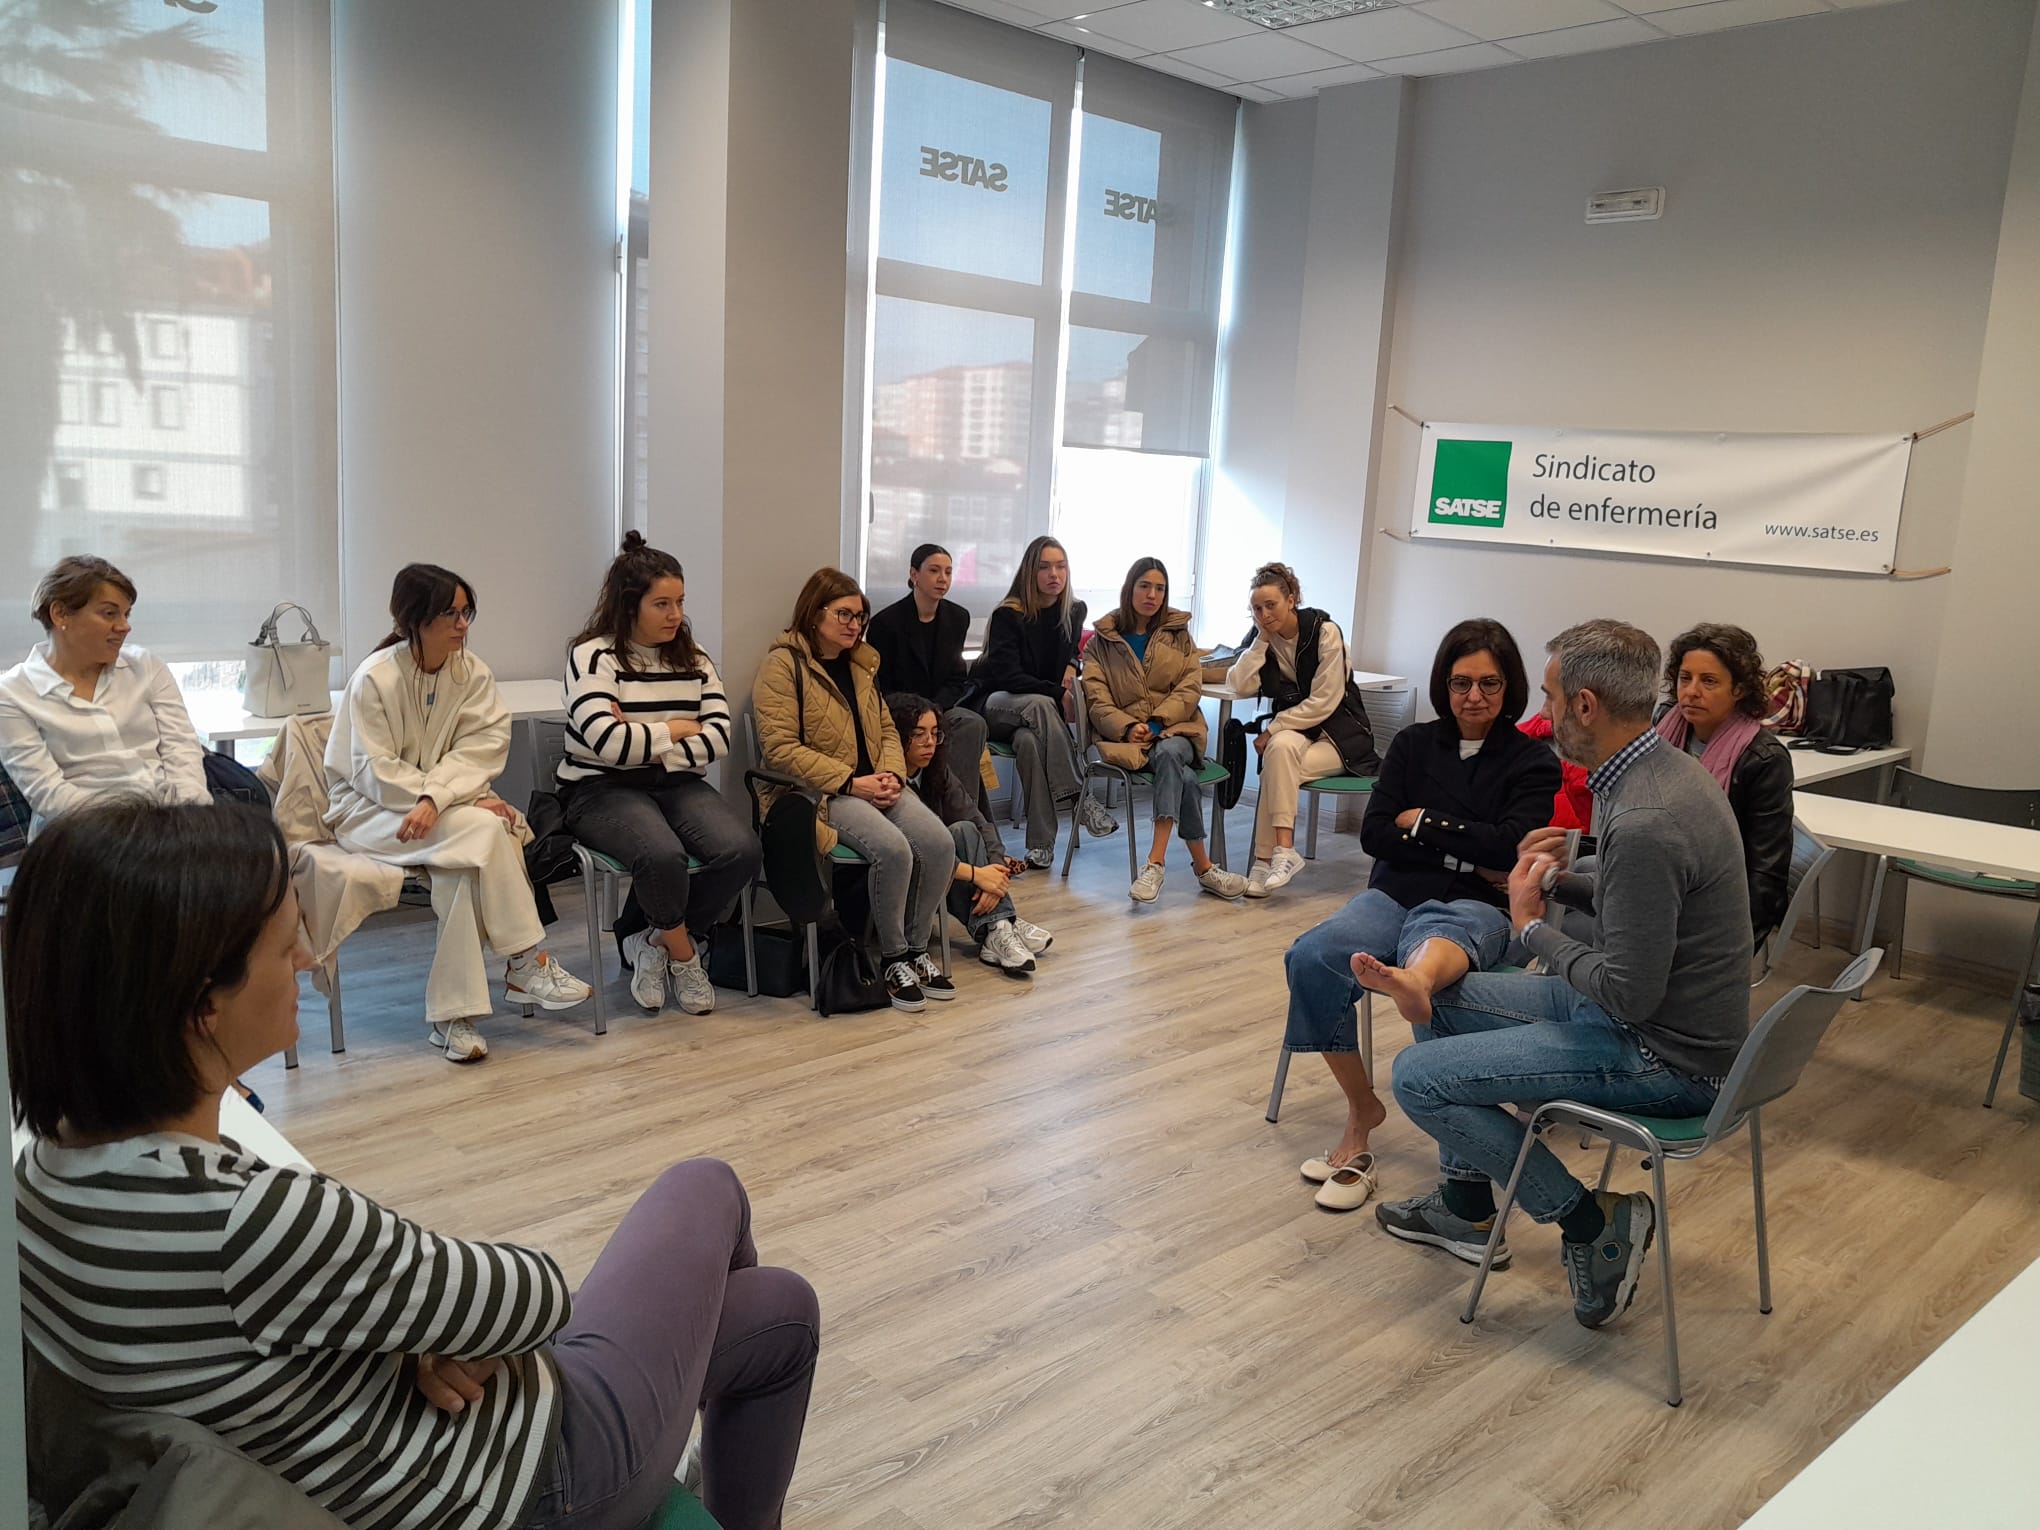 Momento del taller de vendaje funcional organizado por SATSE en Ourense, y dirigido a Enfermeras/os